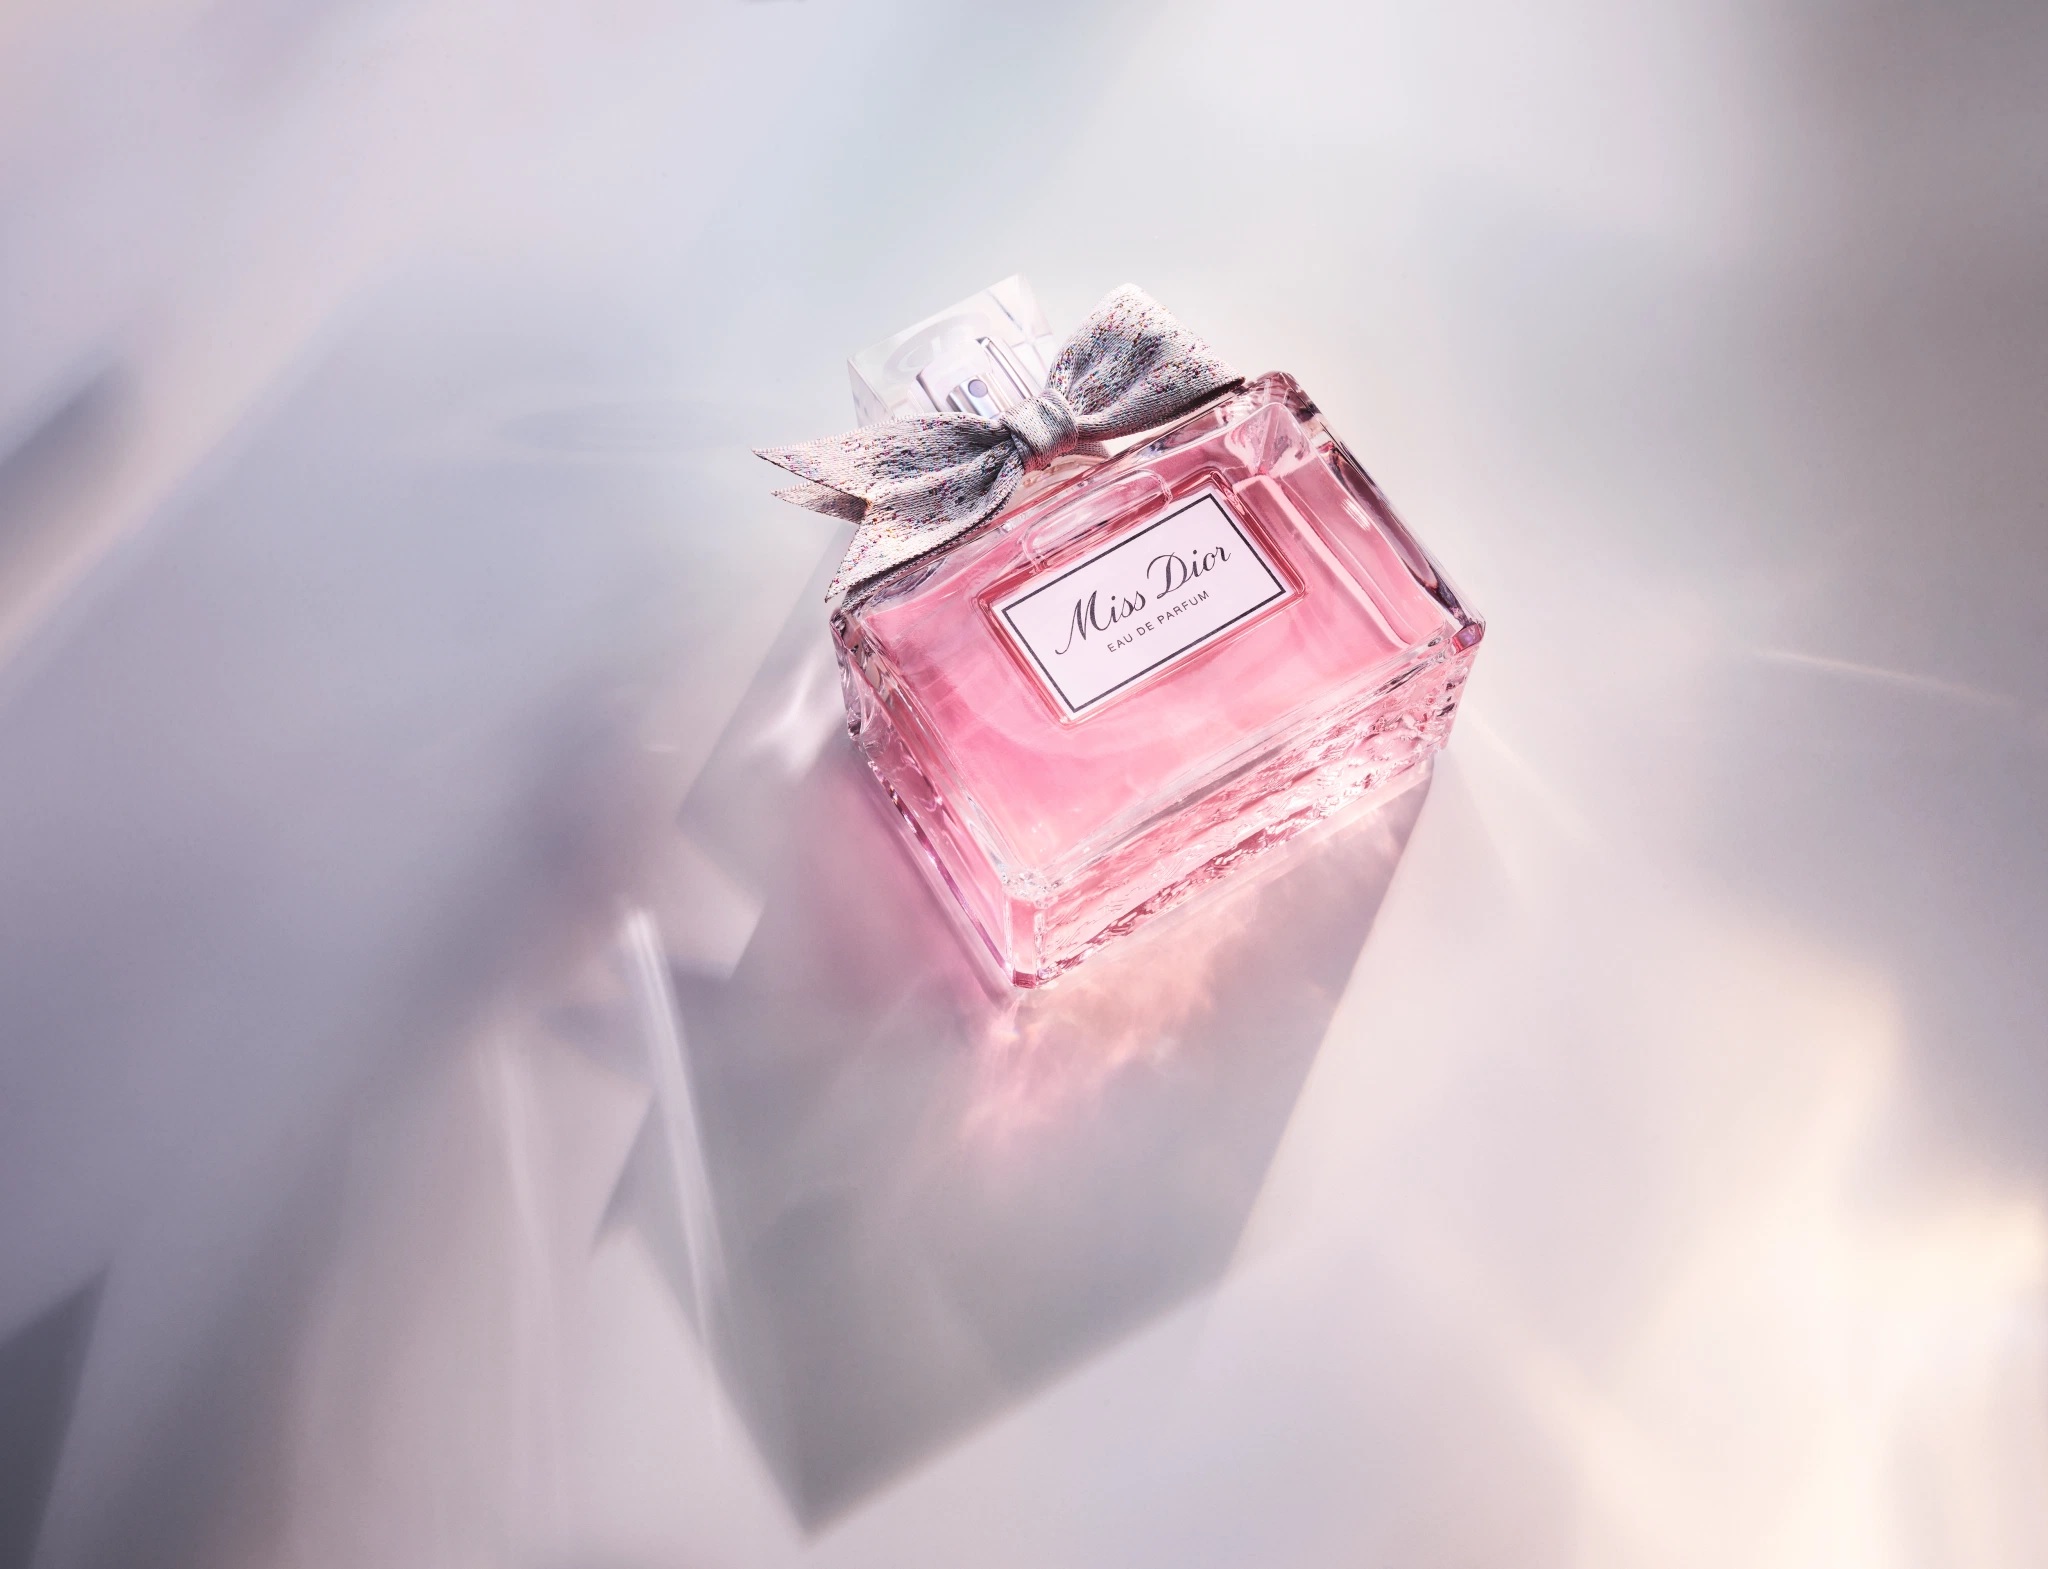 Dior Miss Dior Eau De Parfum 100ml Bản 2021 xách tay chính hãng giá rẻ bảo  hành dài  Nước hoa nữ  Genmaz